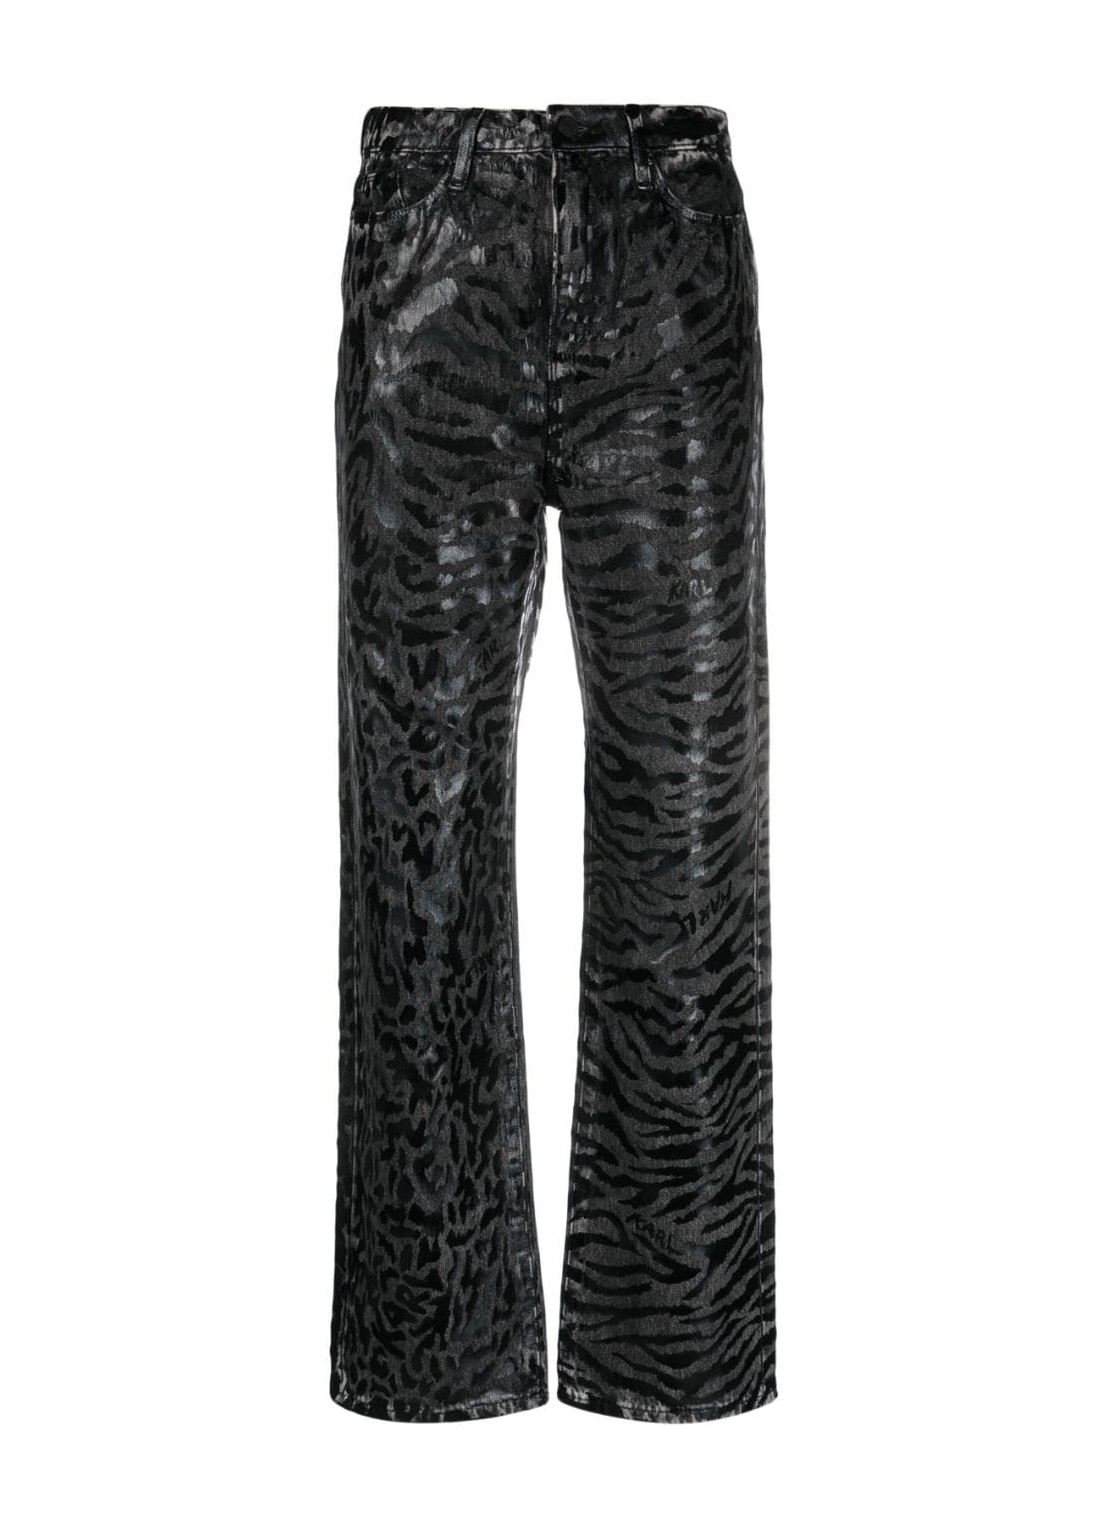 Pantalon jeans karl lagerfeld denim woman aop straight denim pants 240w1102 e03 talla negro
 